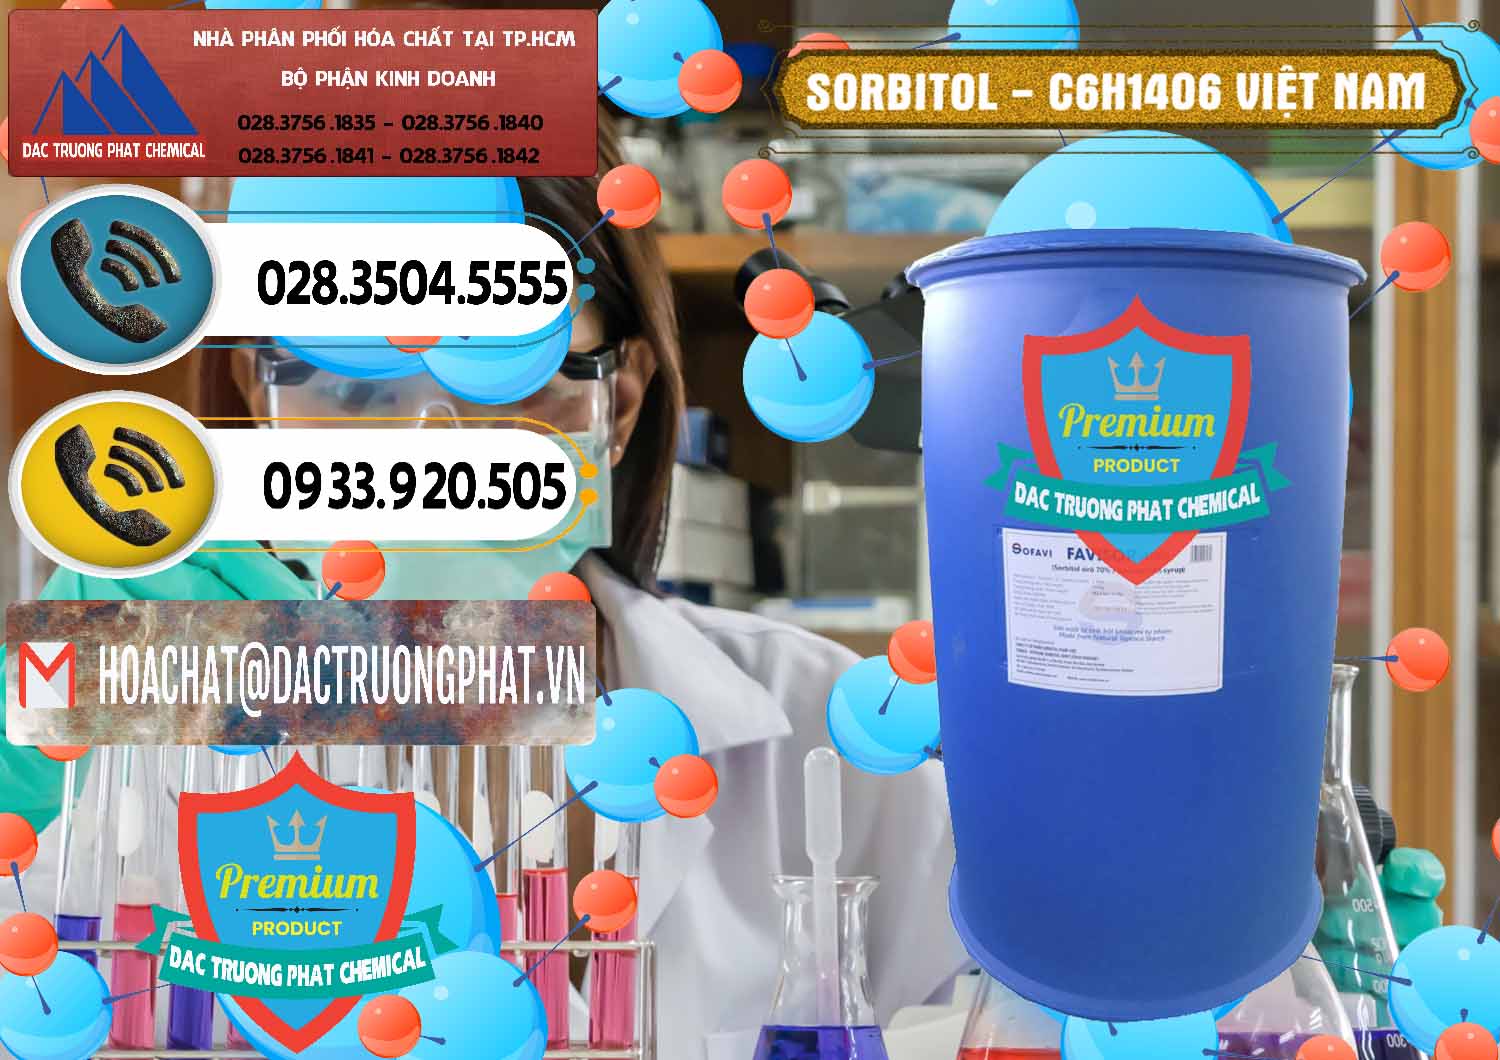 Cung ứng ( phân phối ) Sorbitol - C6H14O6 Lỏng 70% Food Grade Việt Nam - 0438 - Cty bán & cung cấp hóa chất tại TP.HCM - hoachatdetnhuom.vn